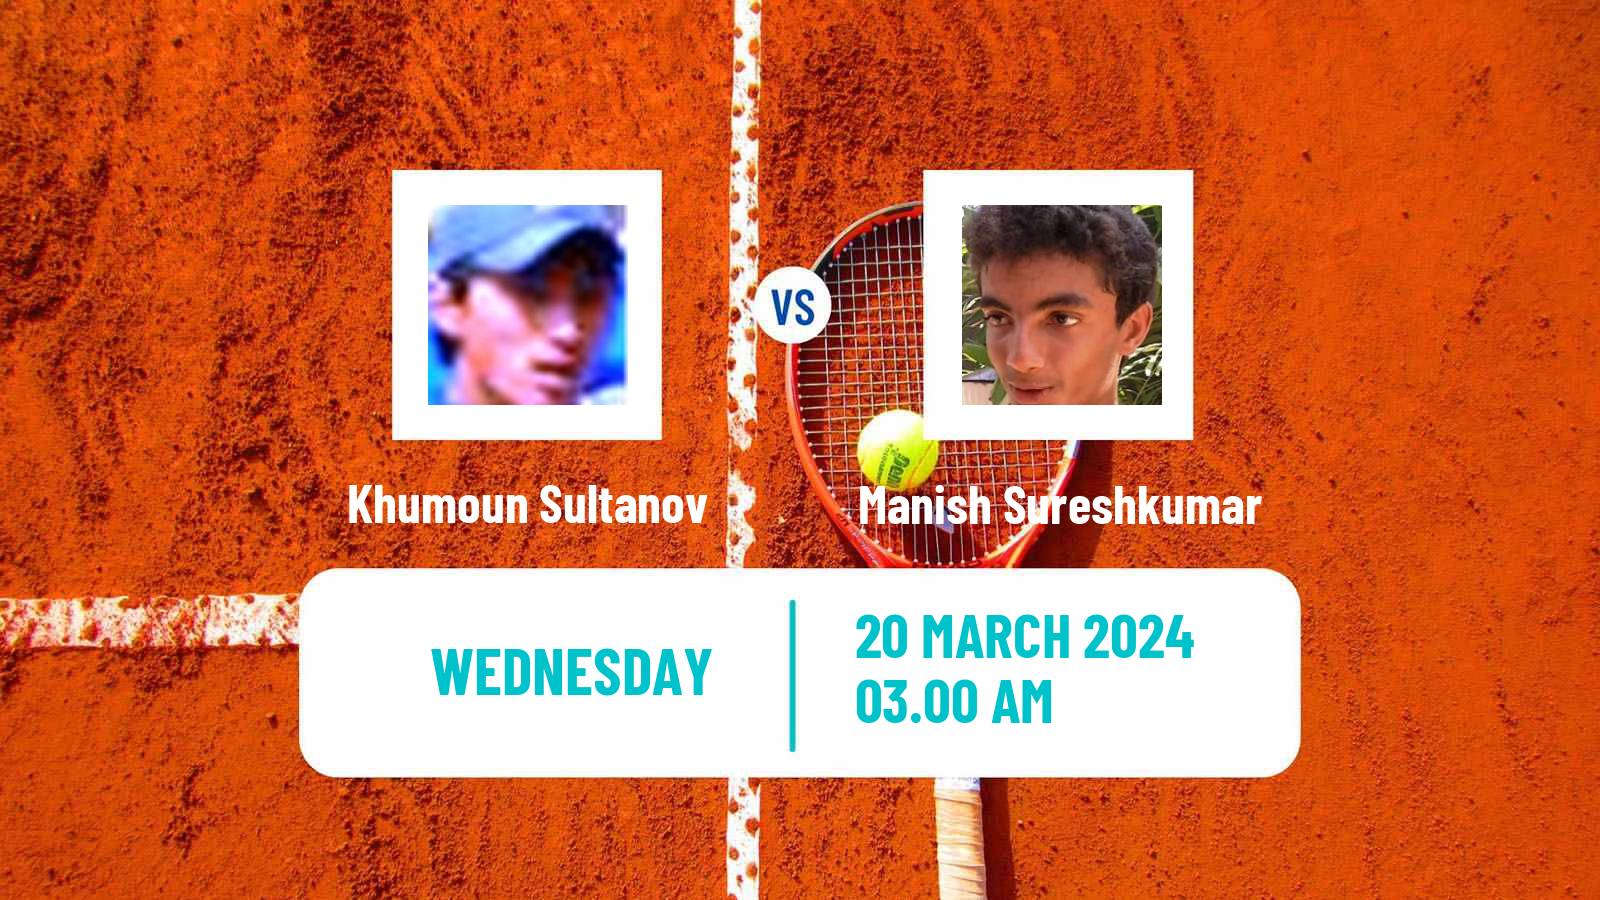 Tennis ITF M15 Chandigarh Men Khumoun Sultanov - Manish Sureshkumar